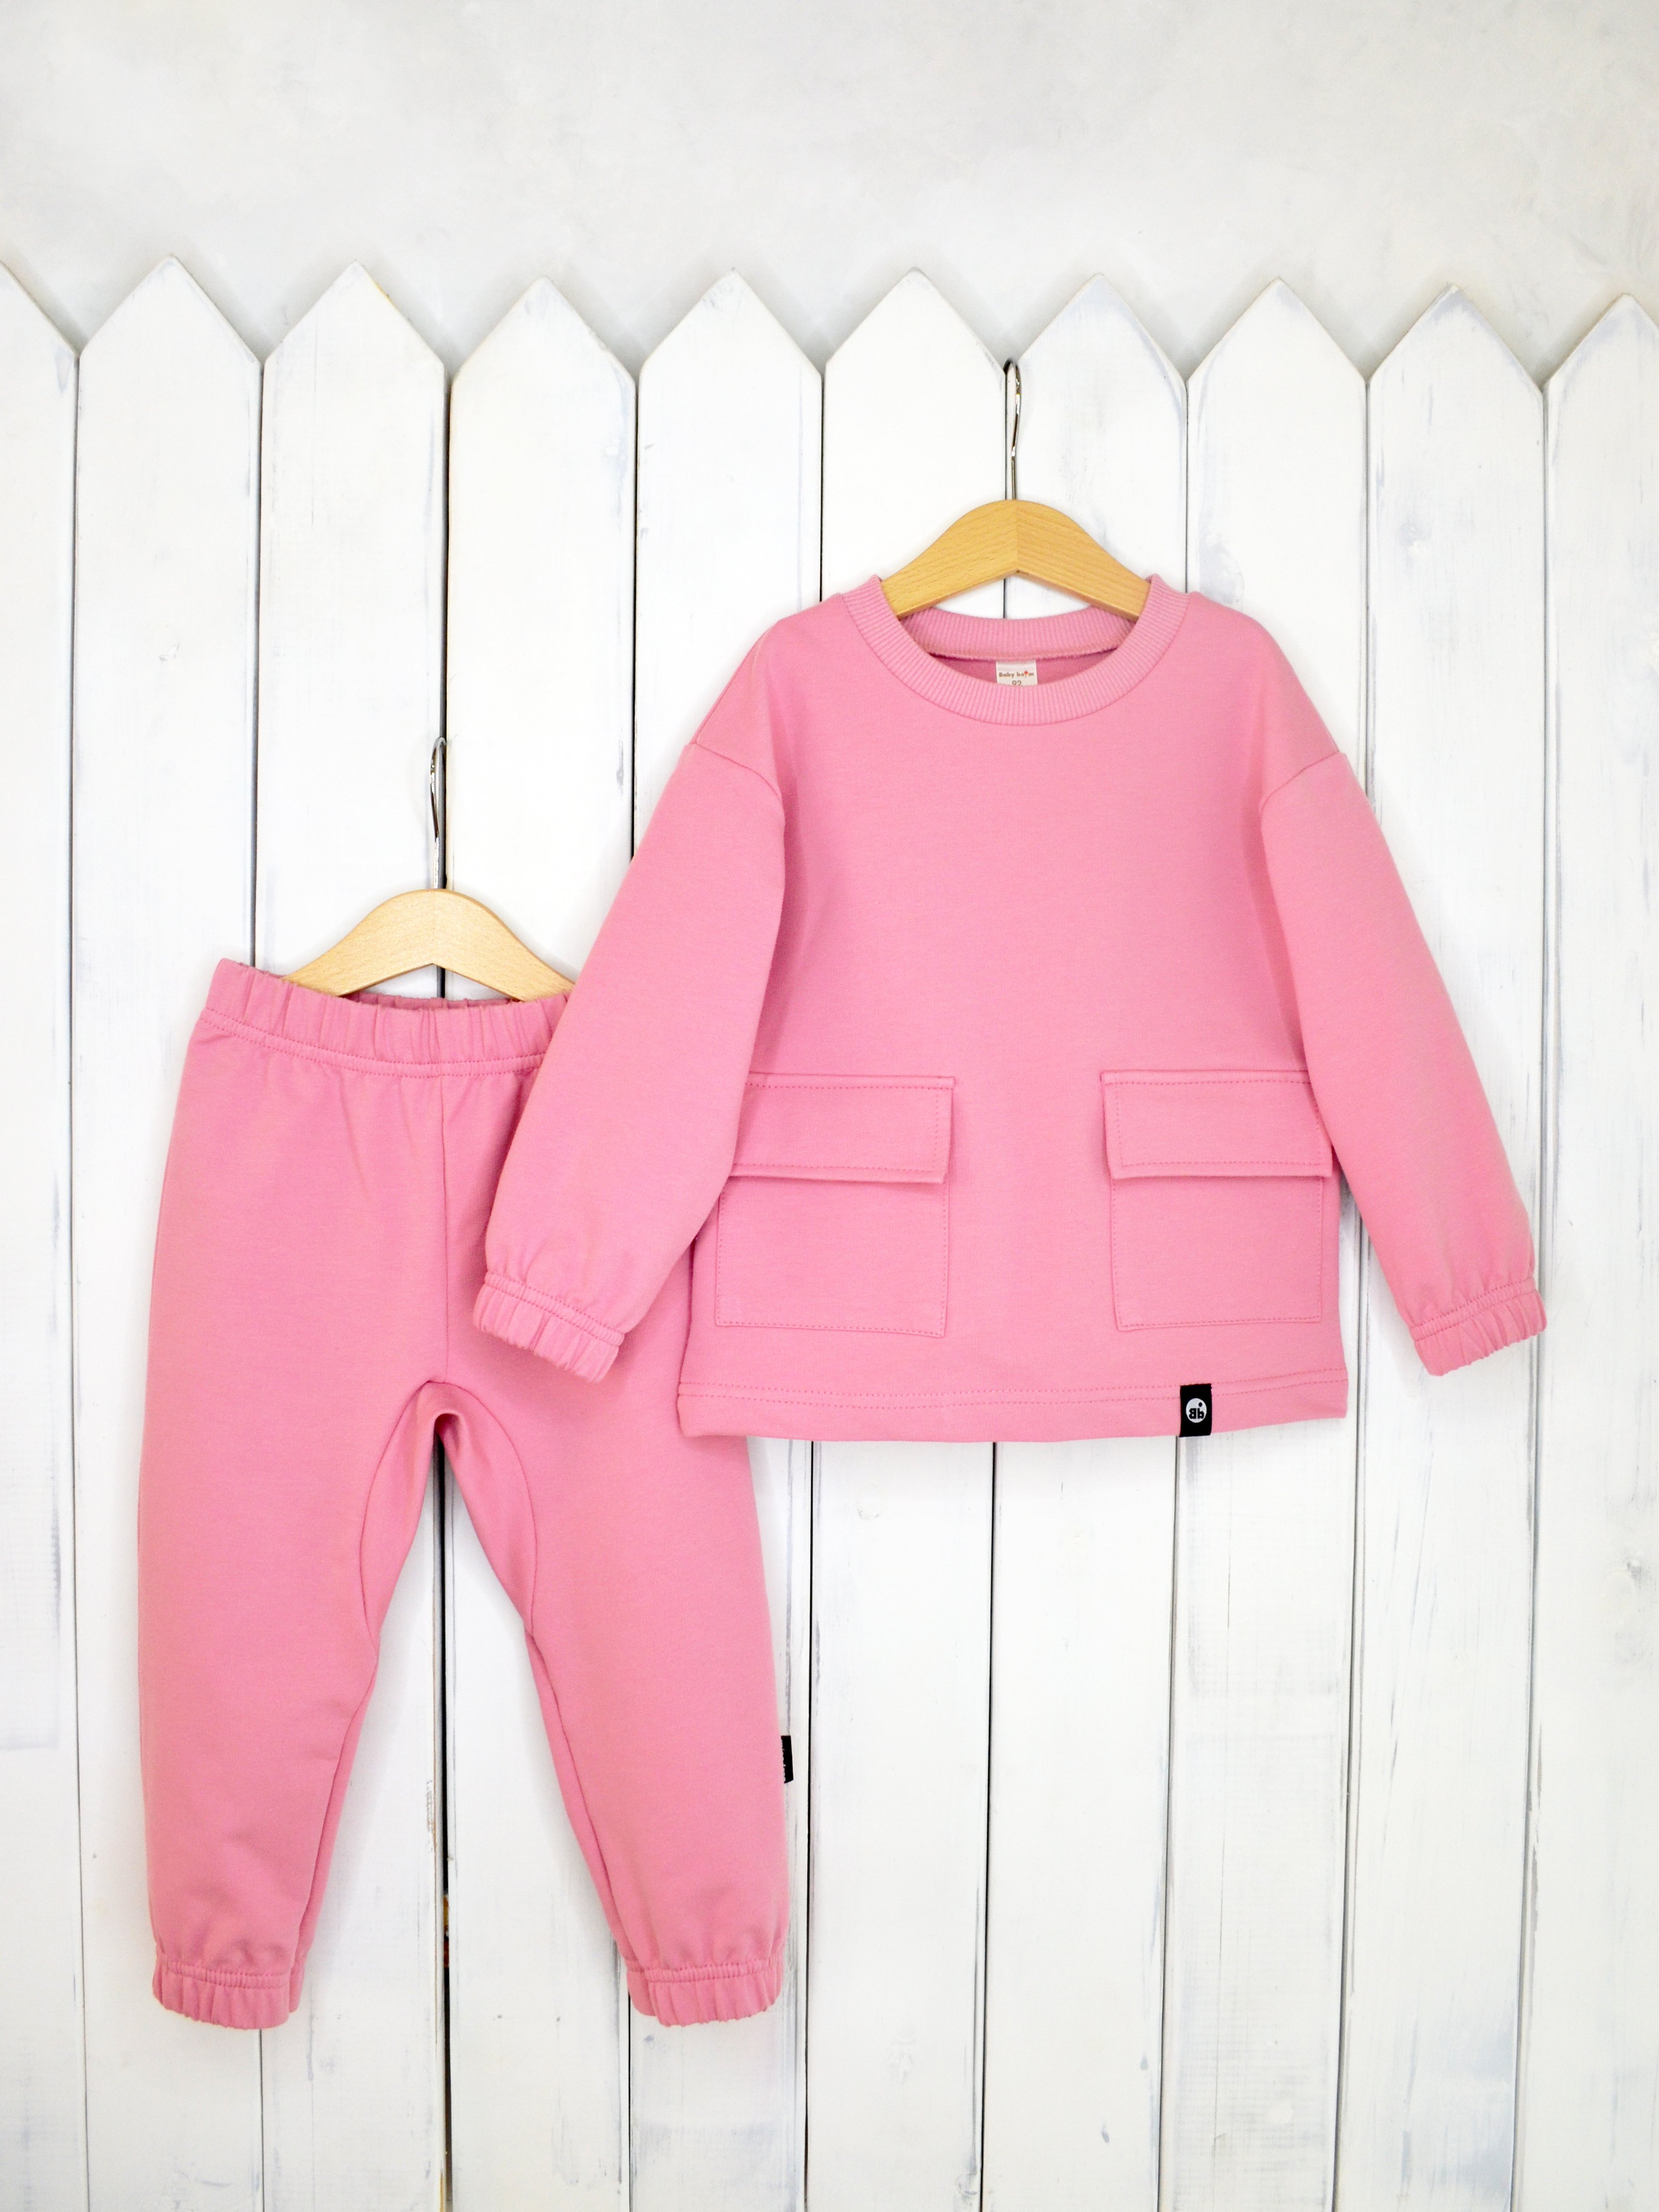 КД326/3-Ф Комплект детский джемпер+брюки цвет: розовый зефир р.116 Бэби Бум - Йошкар-Ола 